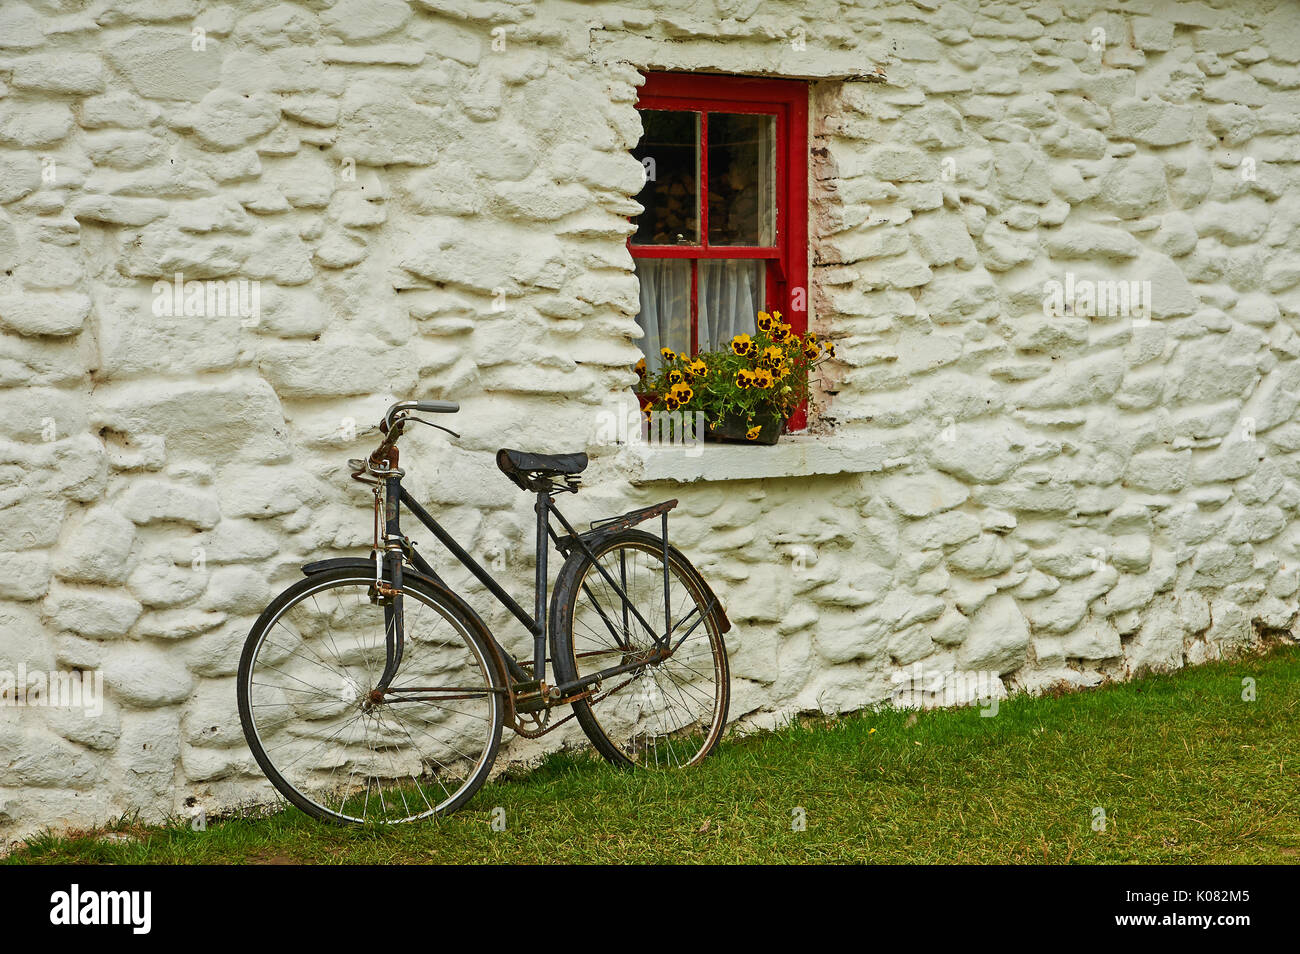 Una vecchia bicicletta appoggiata contro un lime lavato costruzione in pietra con un dipinto di rosso finestra e fiori di colore giallo Foto Stock